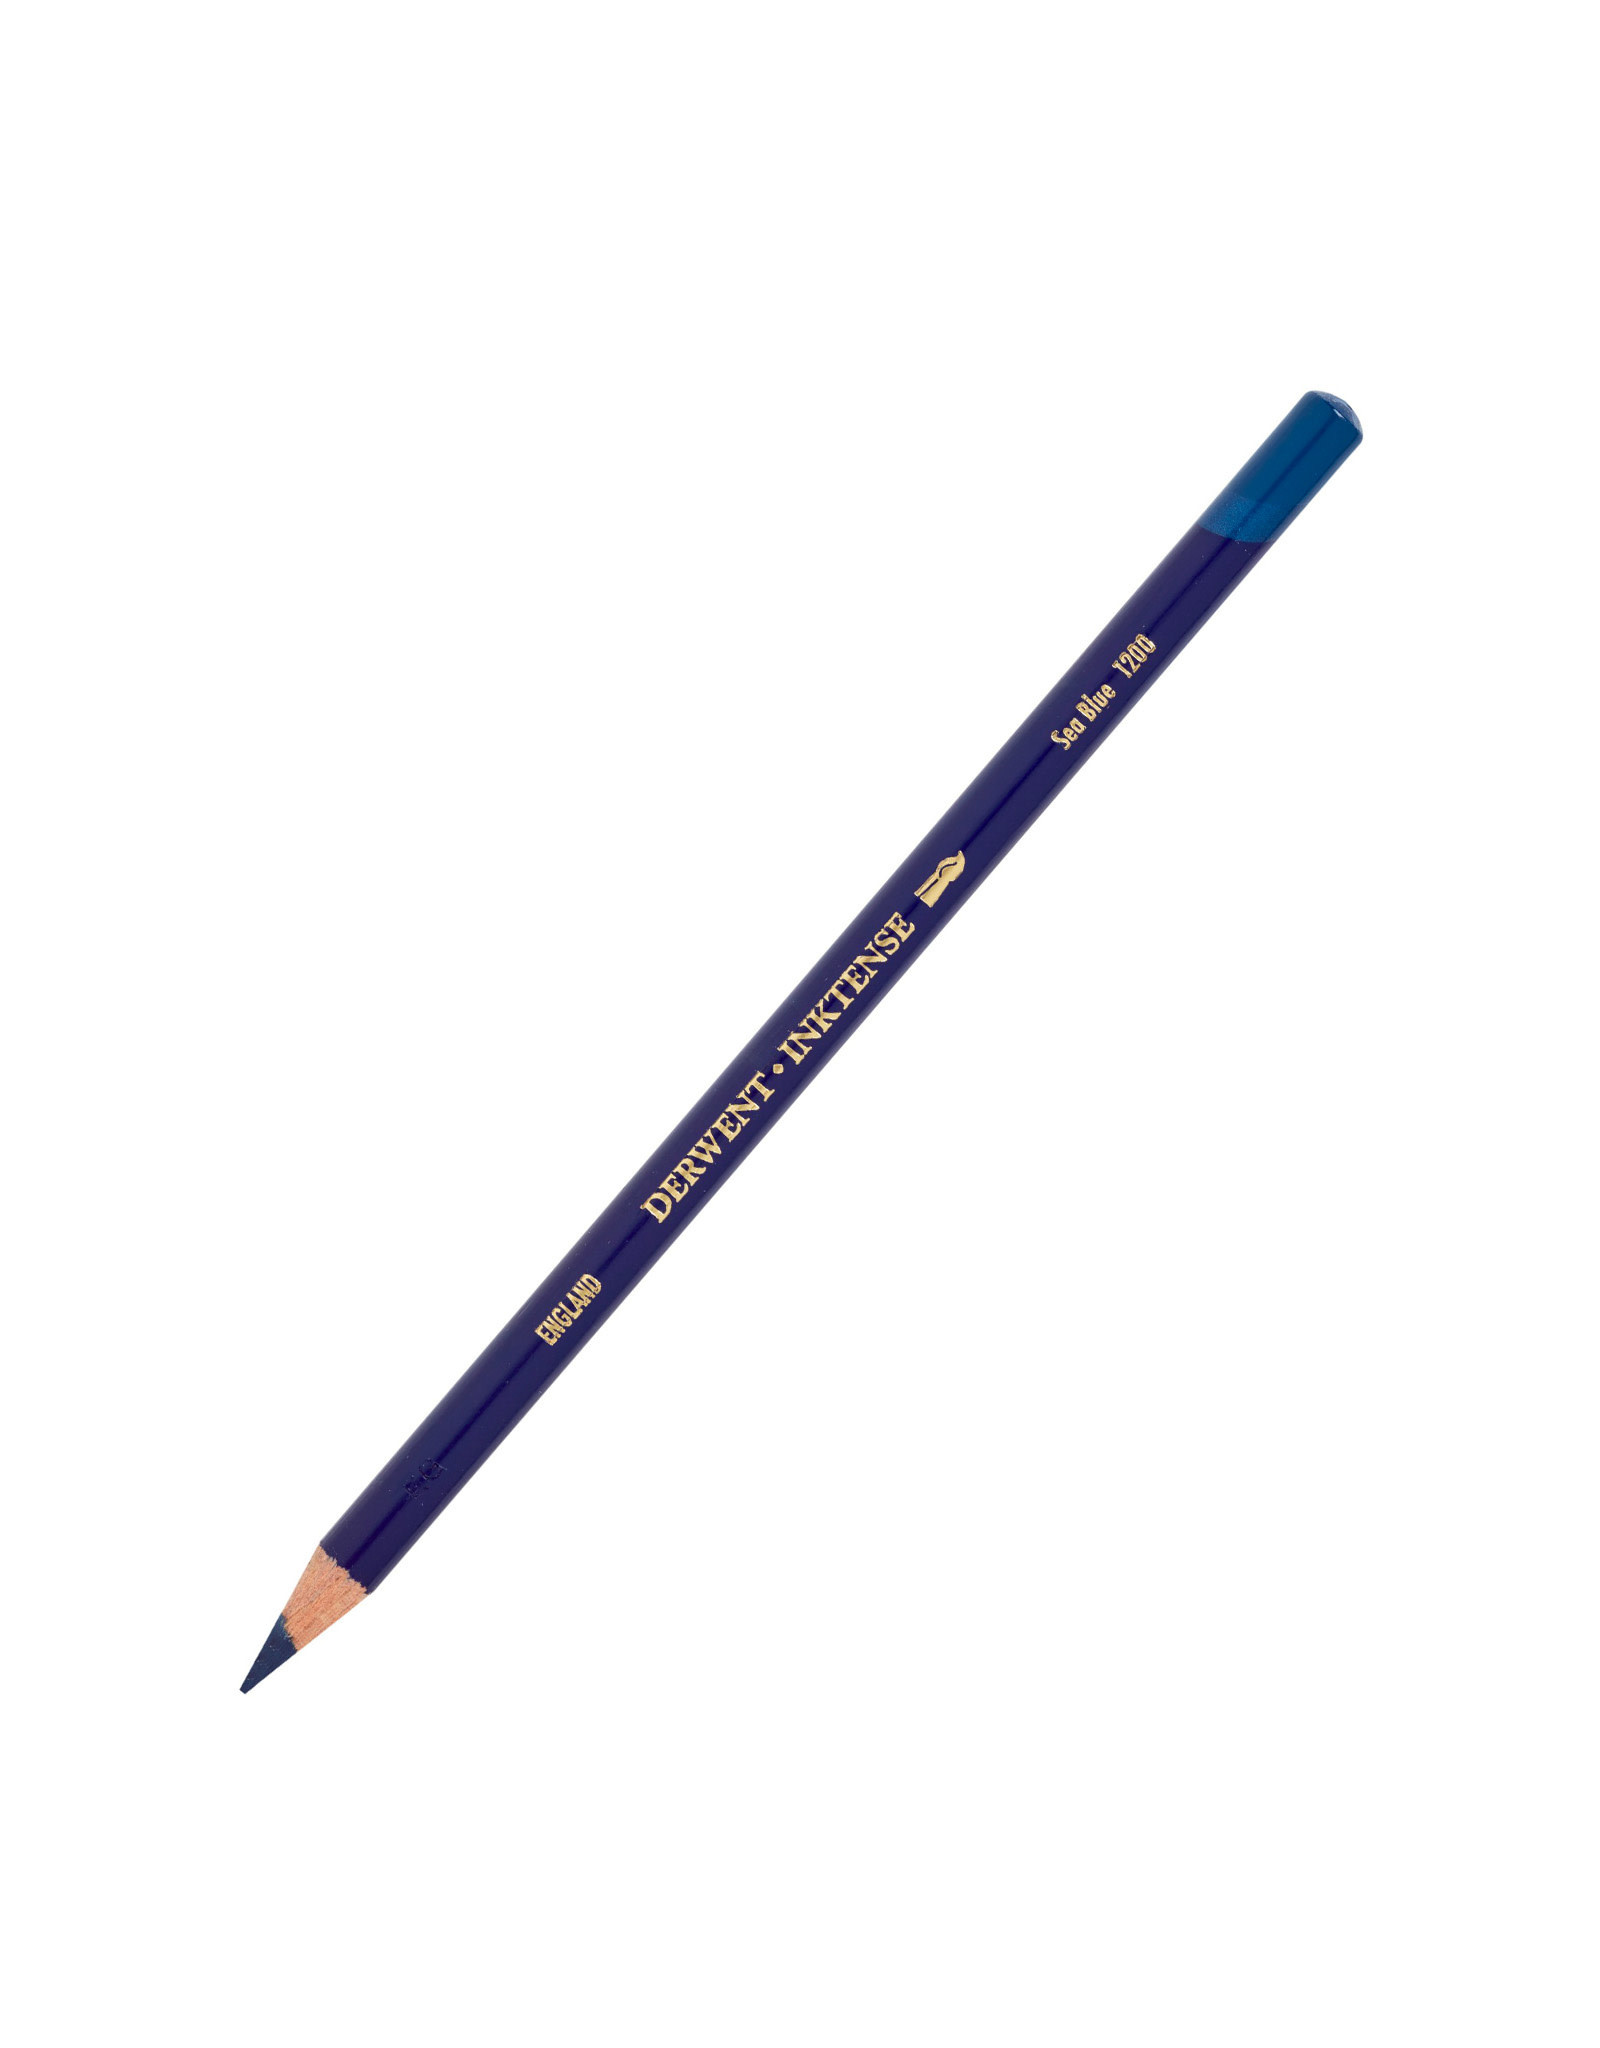 Derwent Derwent Inktense Pencil, Sea Blue